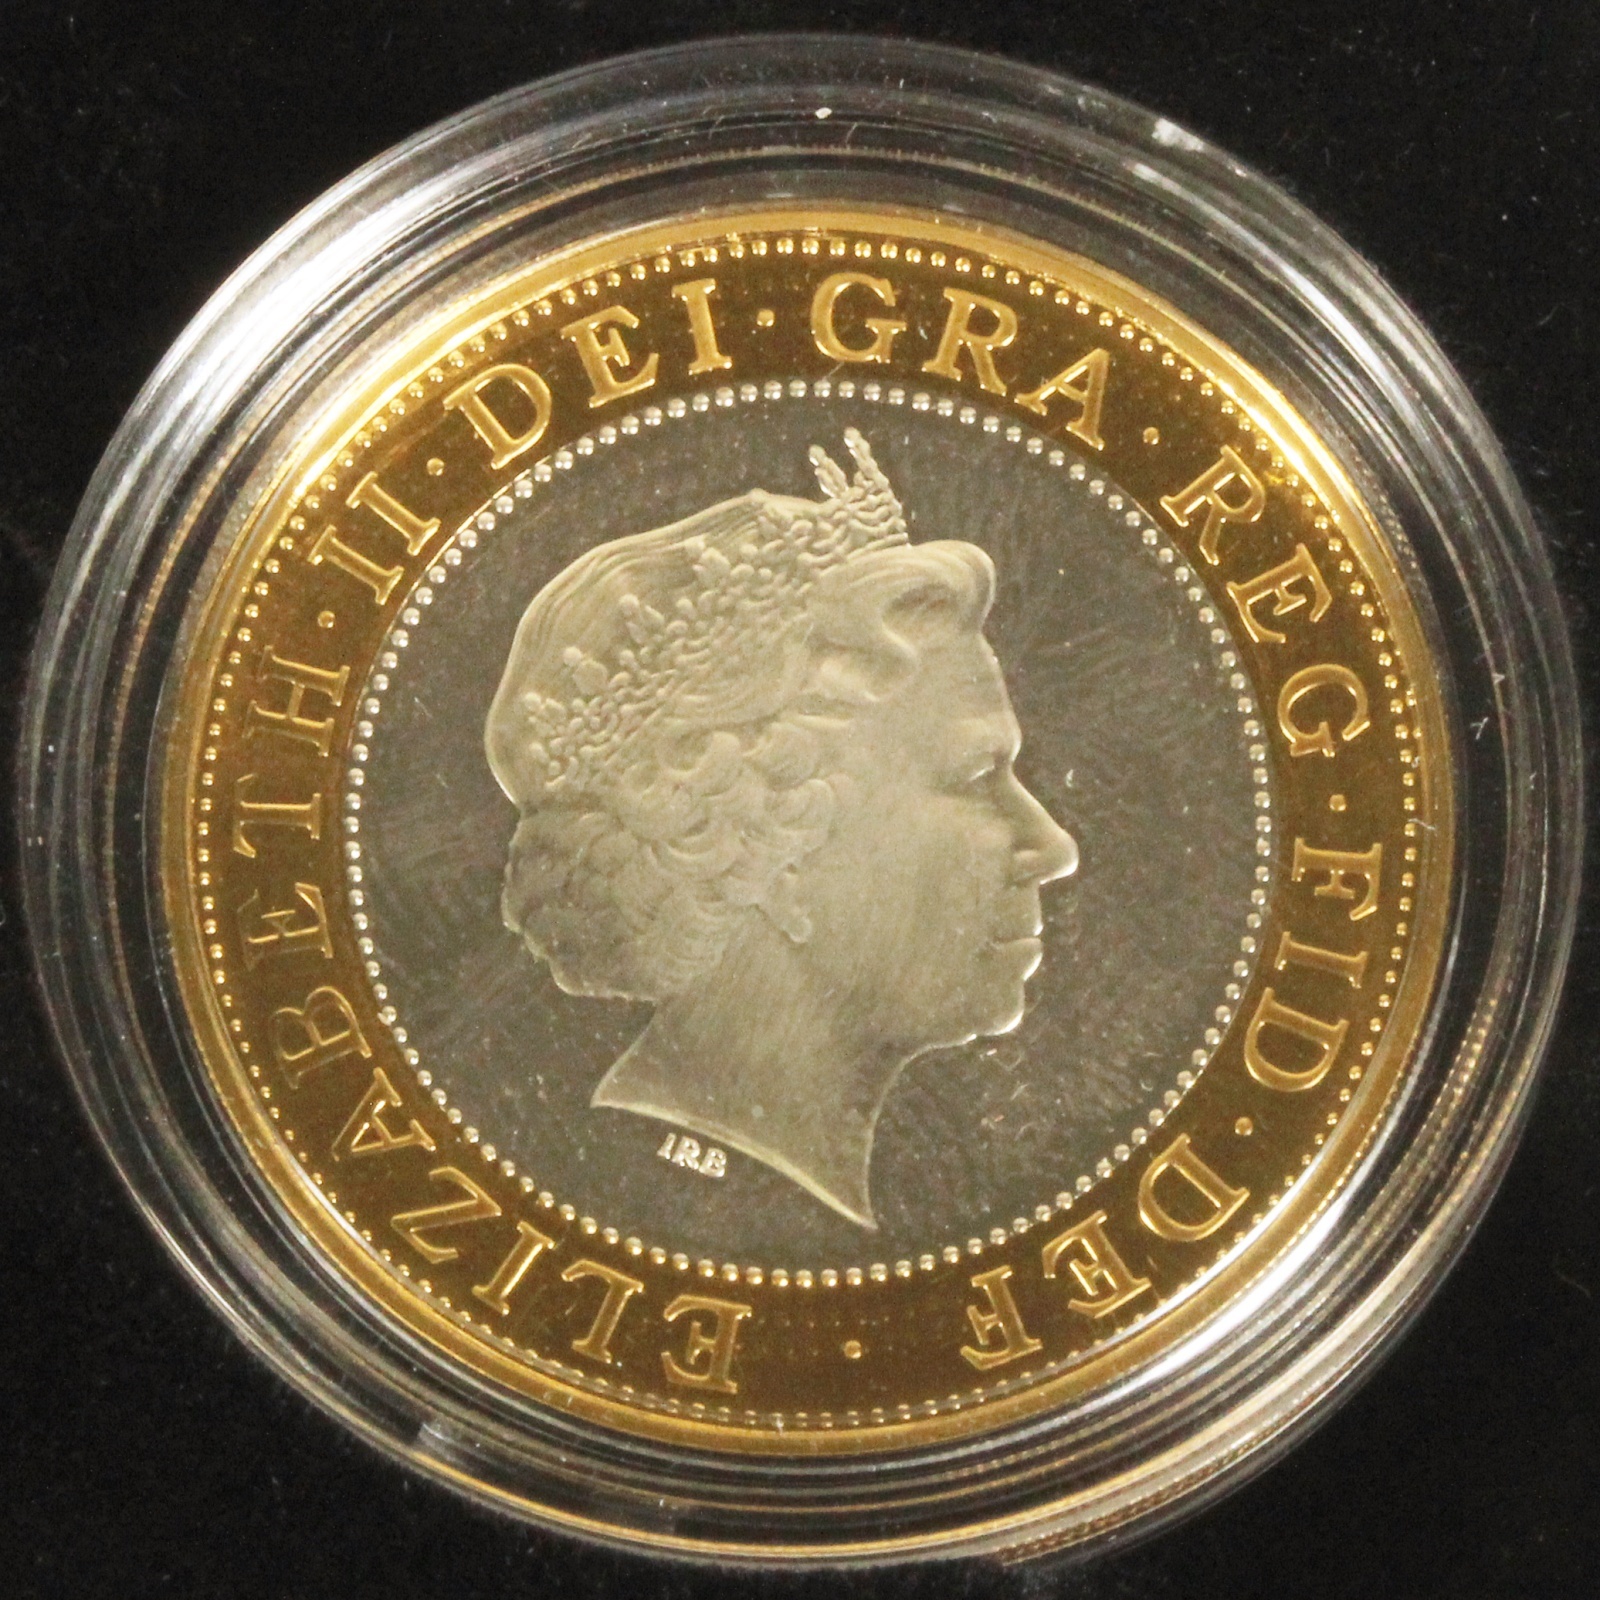 英国王室造幣局 2003年 DNA発見50周年記念 2色2ポンド銀貨 イギリス